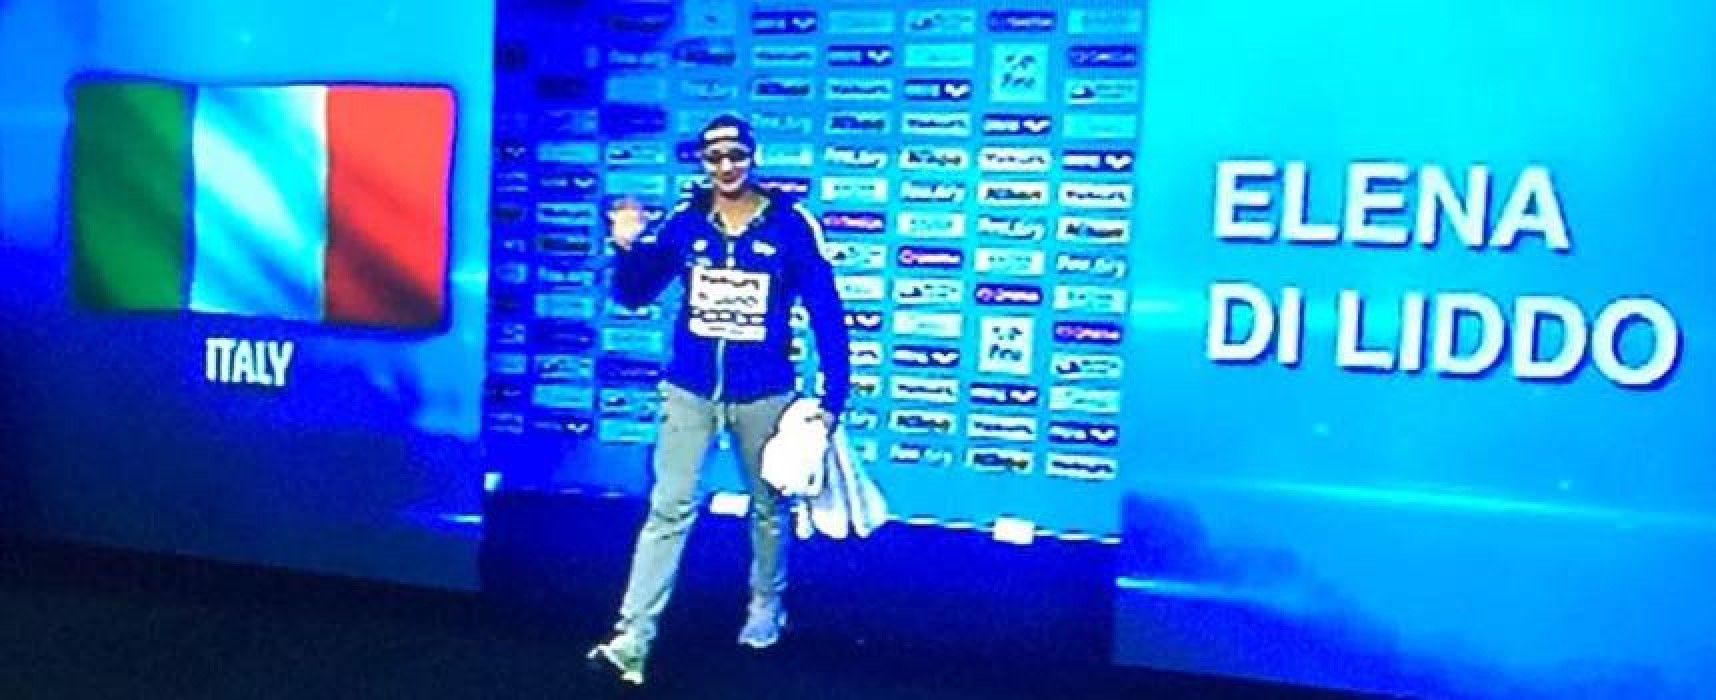 Mondiali di nuoto in vasca corta: la Di Liddo si ferma in semifinale nei 100 farfalla